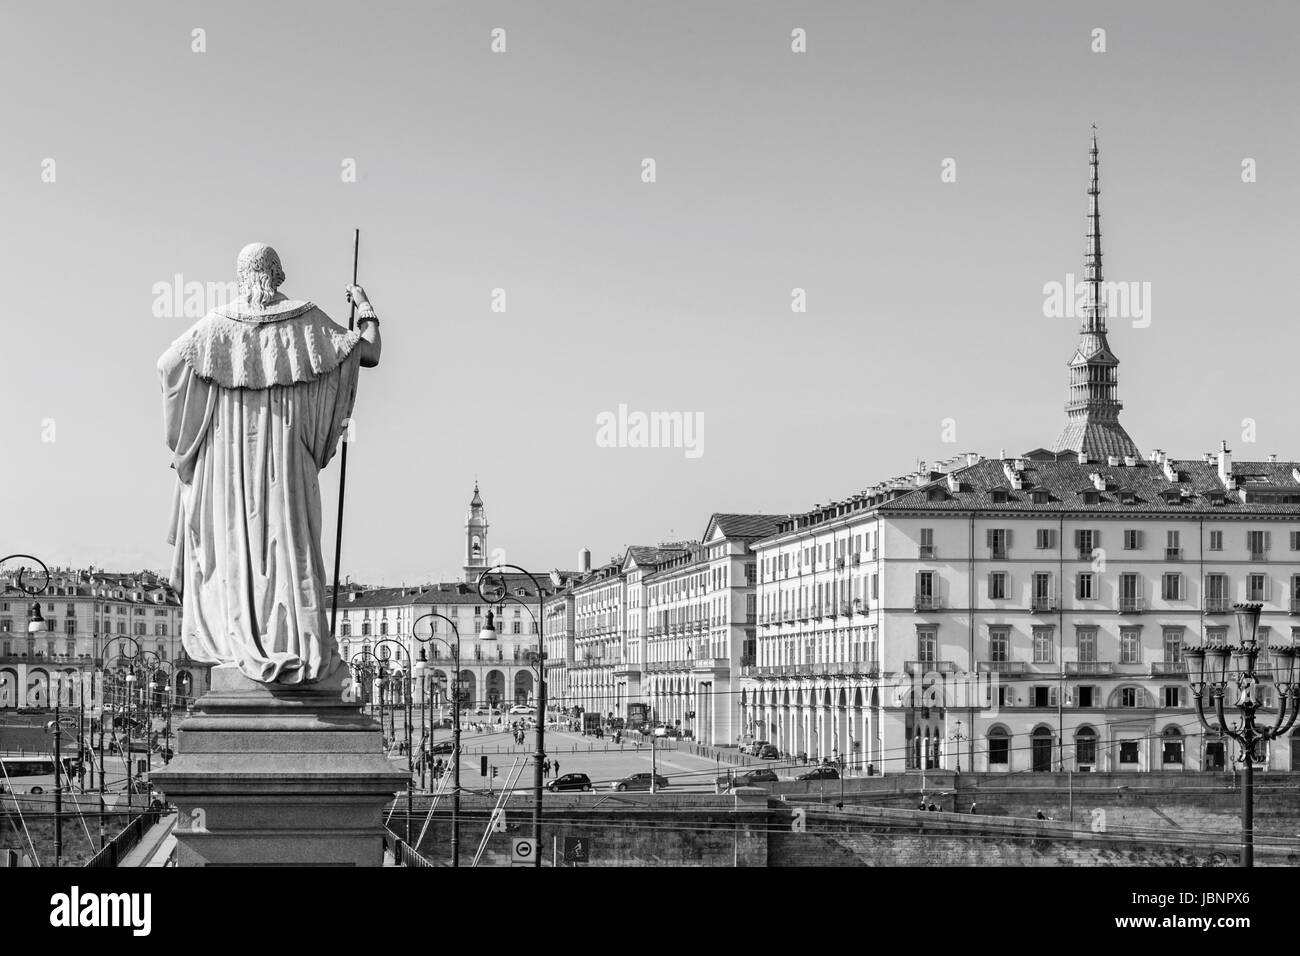 Turin - The look from church Chiesa della San Madre di Dio across the bridge Vittorio Emaneule I and square Piazza Vittorio Veneto. Stock Photo